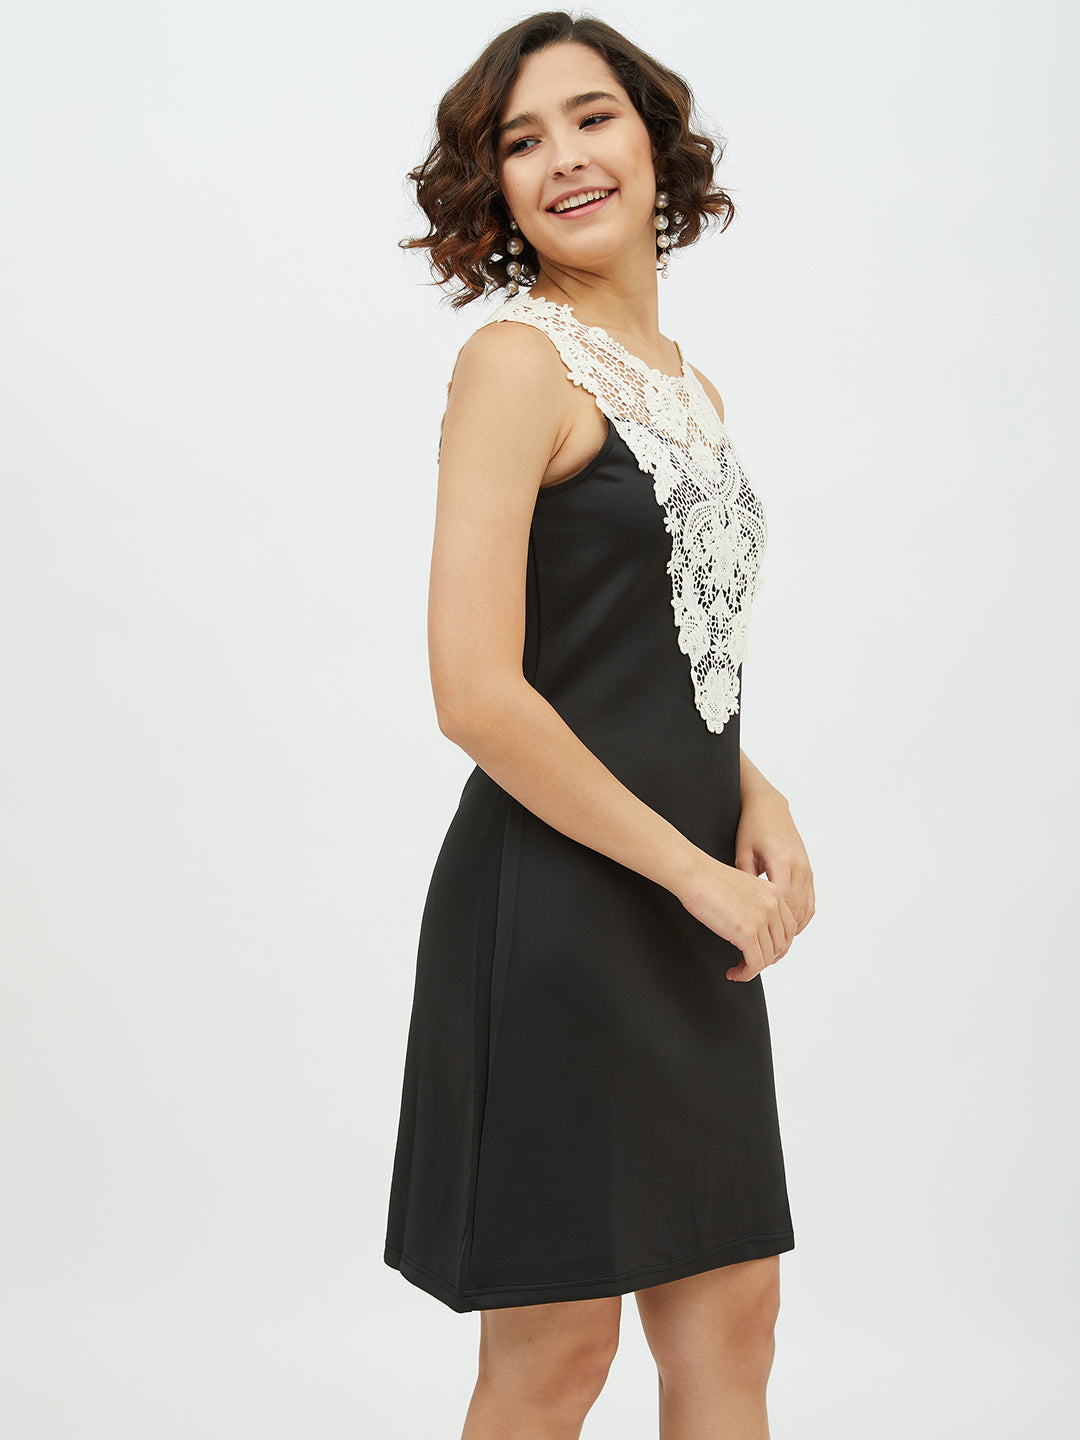 Women's Crochet Lace Black Dress - StyleStone